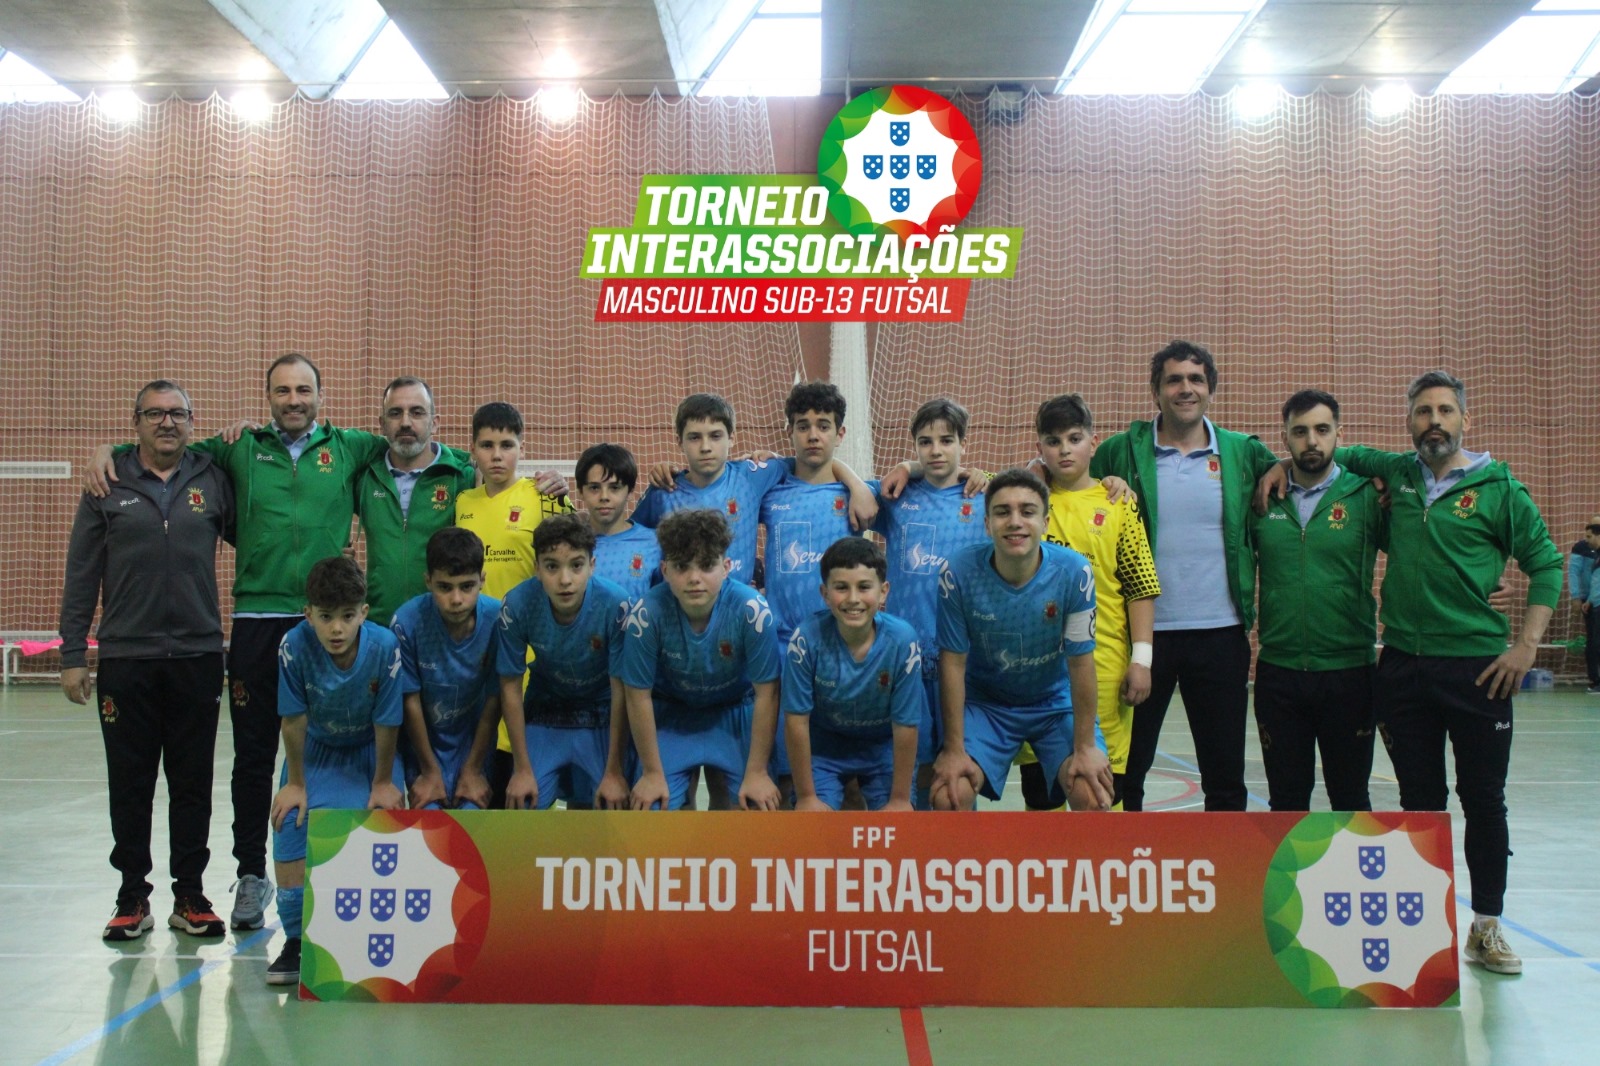 Torneio Interassociações de Futsal Masculino de Sub-13